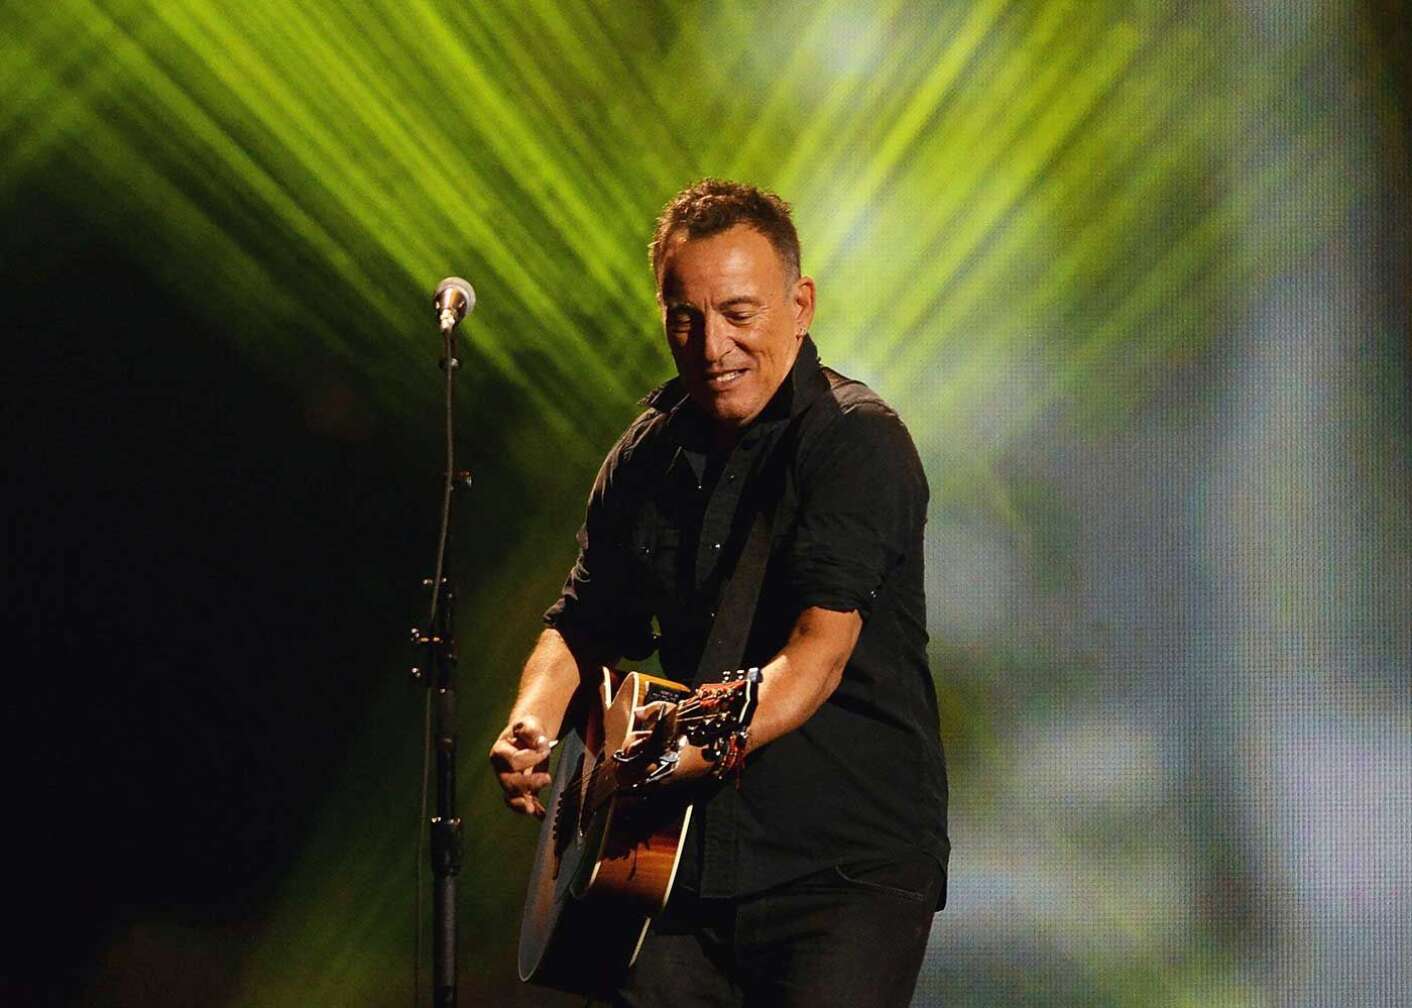 Bruce Springsteen spielt Gitarre auf der Bühne